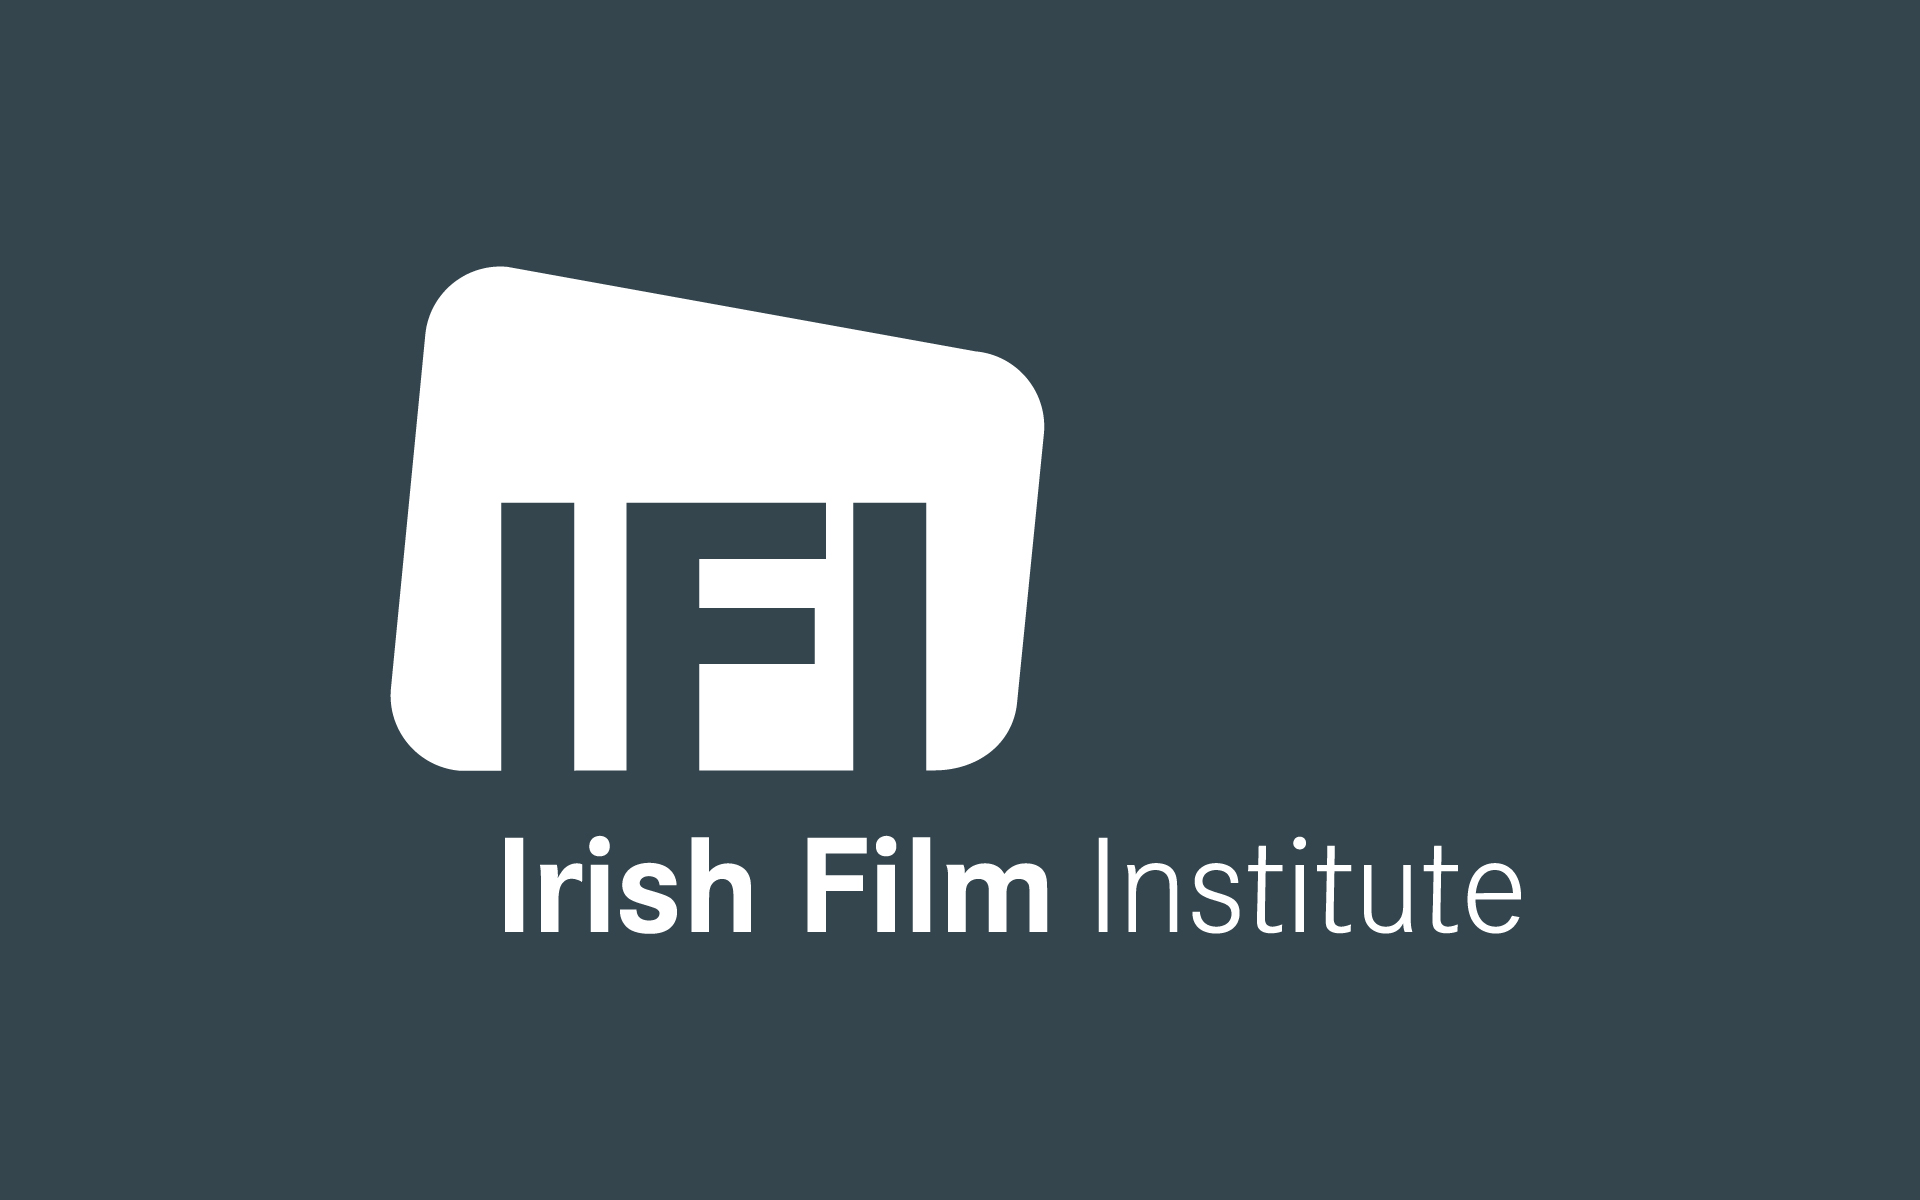 Irish Film Institute visual identity and brand design